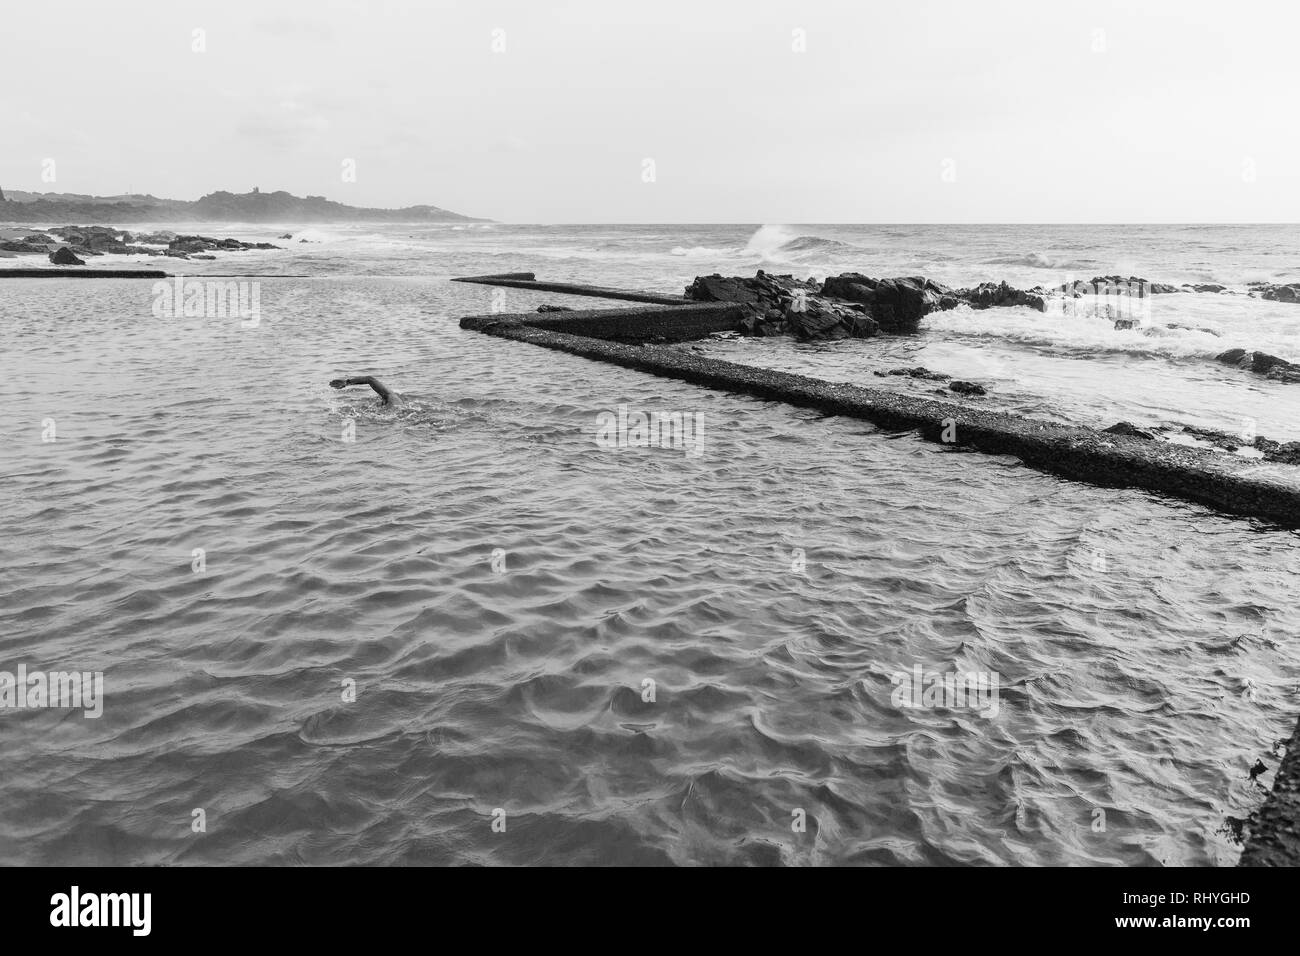 Engagierte männliche schwimmen Fitness Übung in Strand Meer Gezeiten Pool windigen kontrastiert Bedingungen in schwarz-weiß Foto. Stockfoto